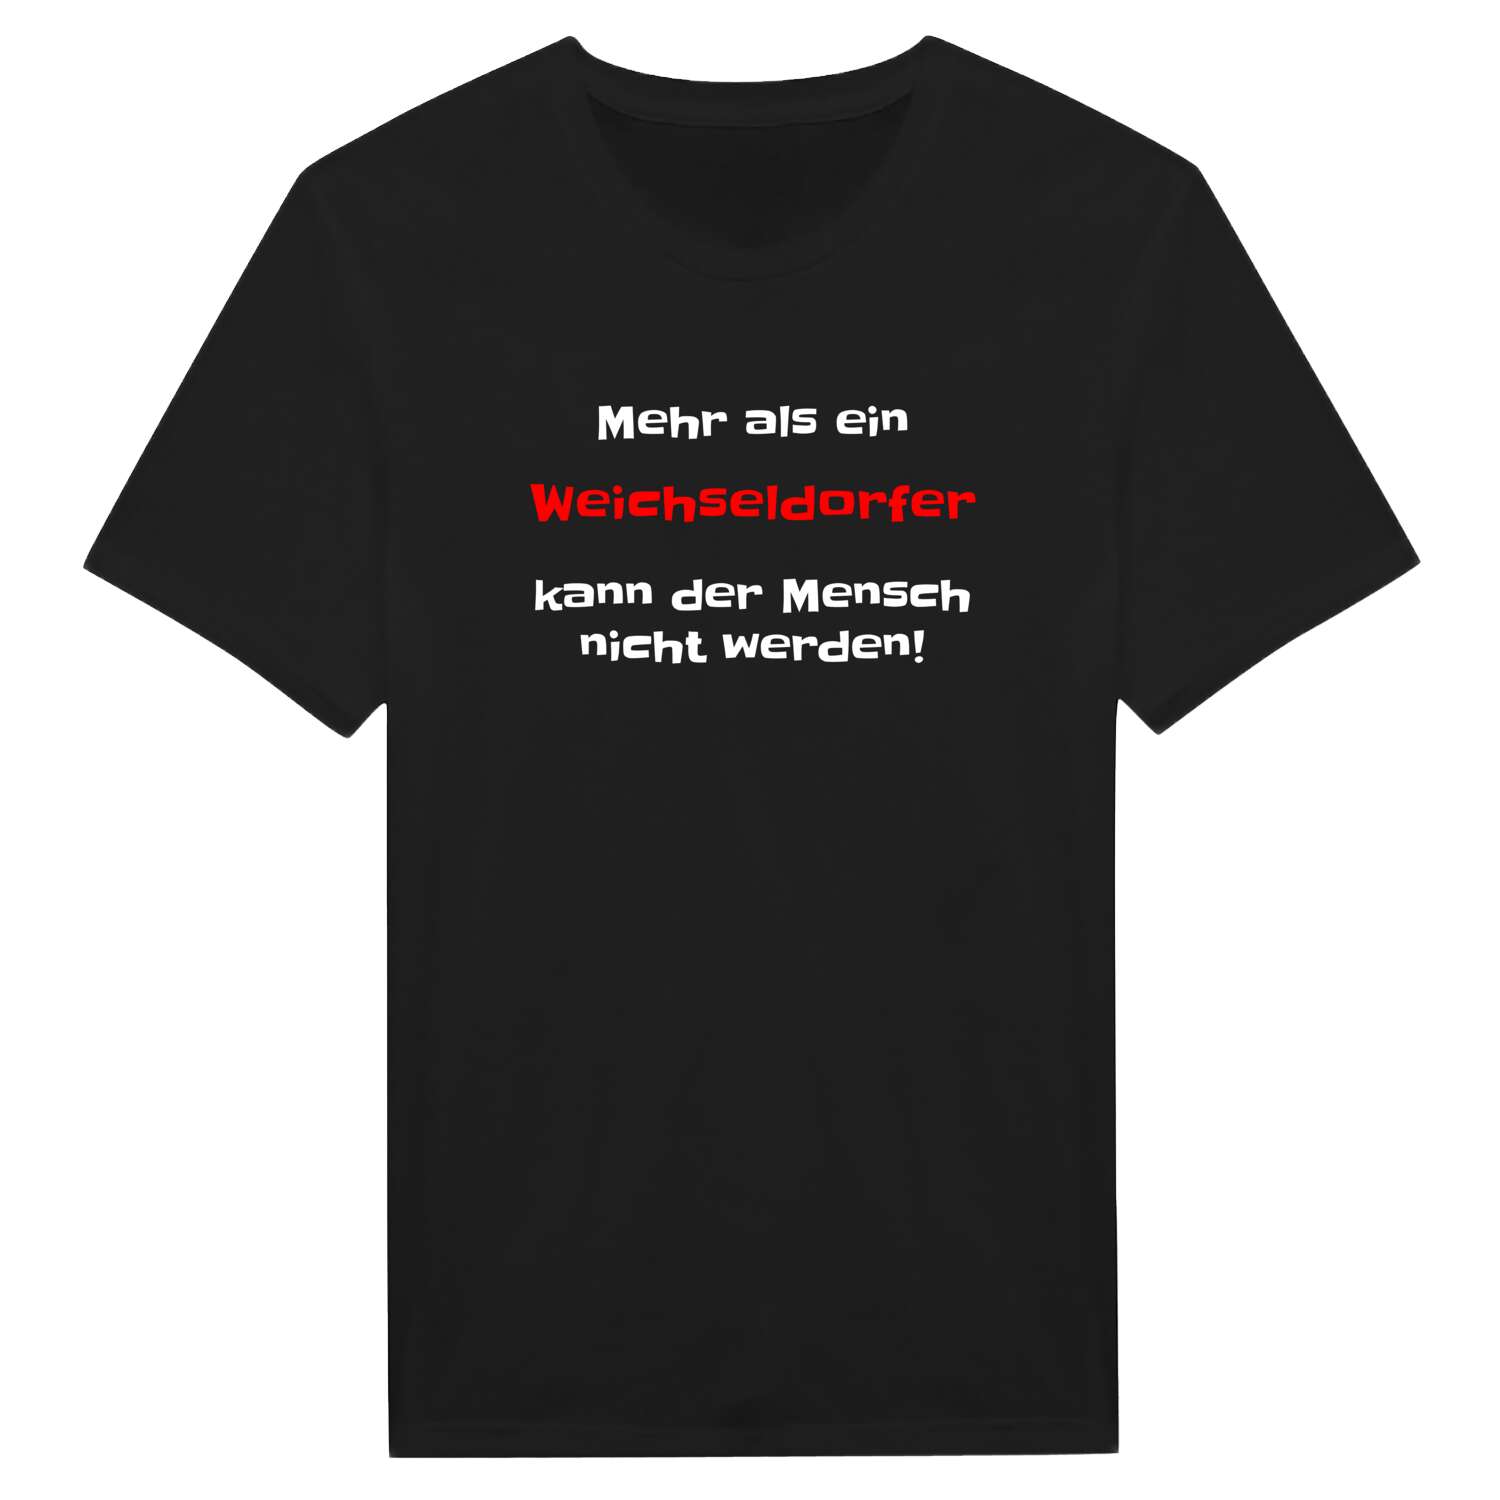 Weichseldorf T-Shirt »Mehr als ein«